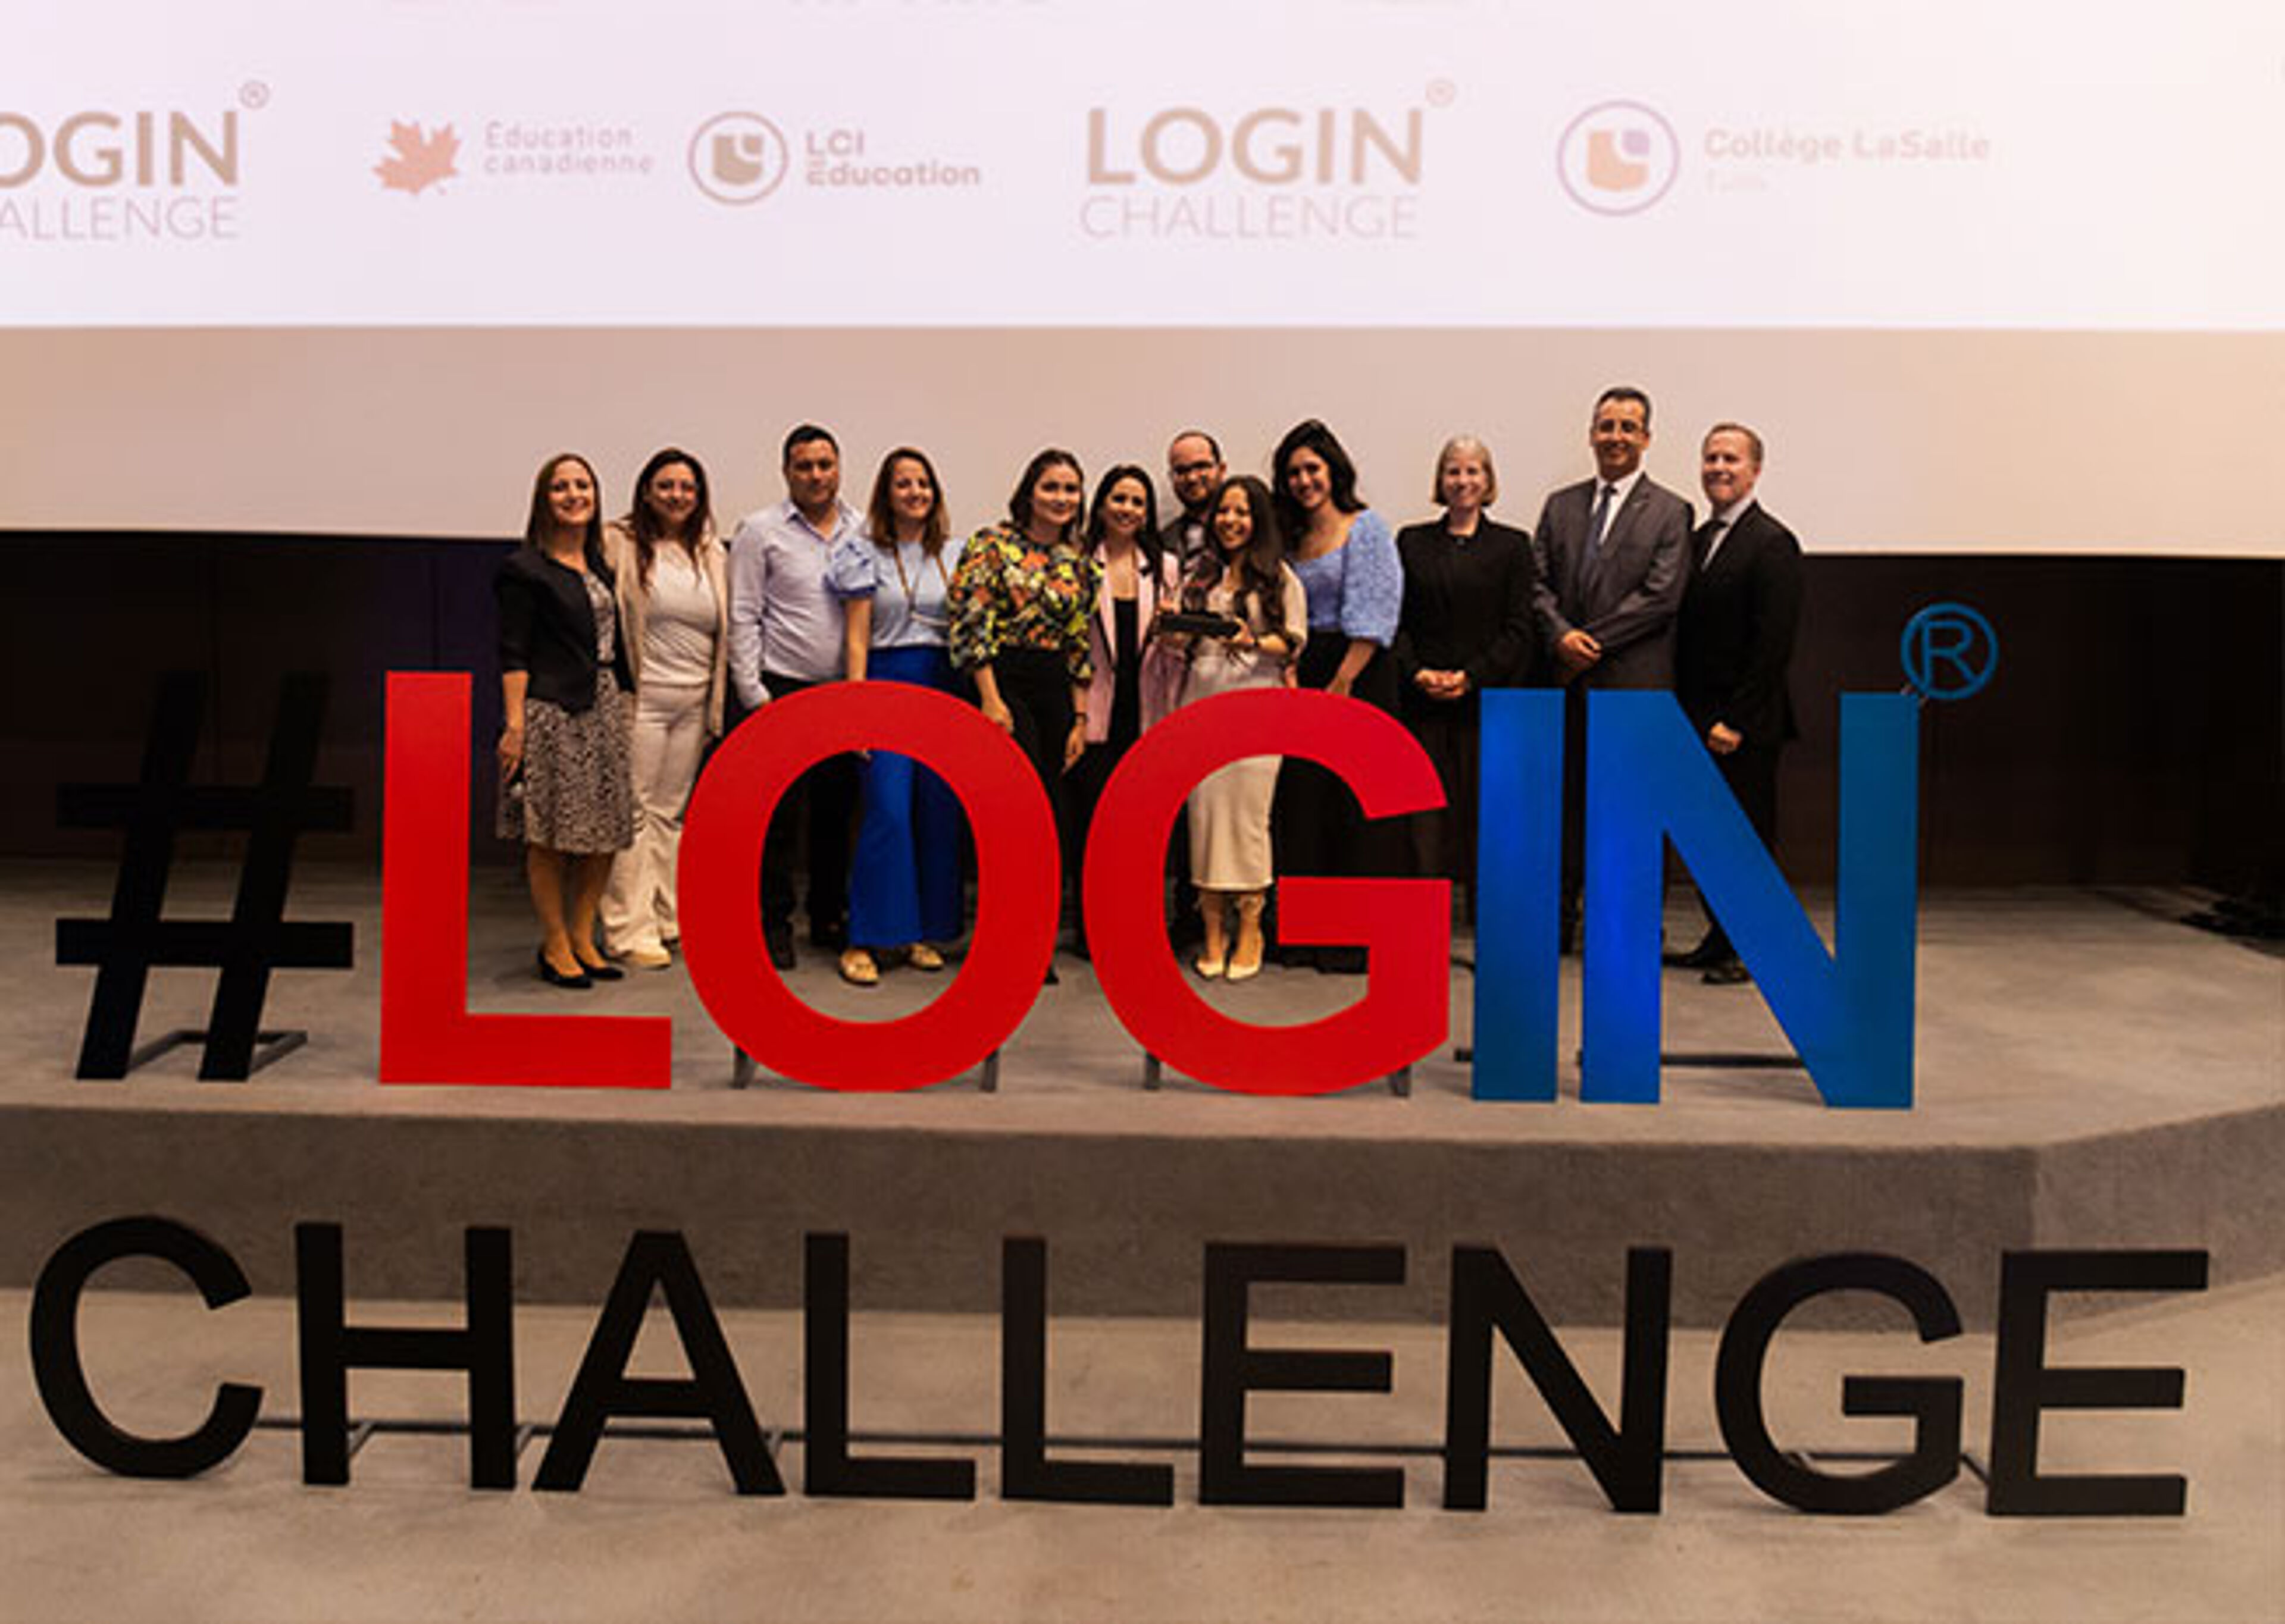 Un groupe varié pose devant un grand panneau "#LOGIN CHALLENGE" en rouge et bleu, probablement participants ou organisateurs d'un événement technologique ou éducatif.